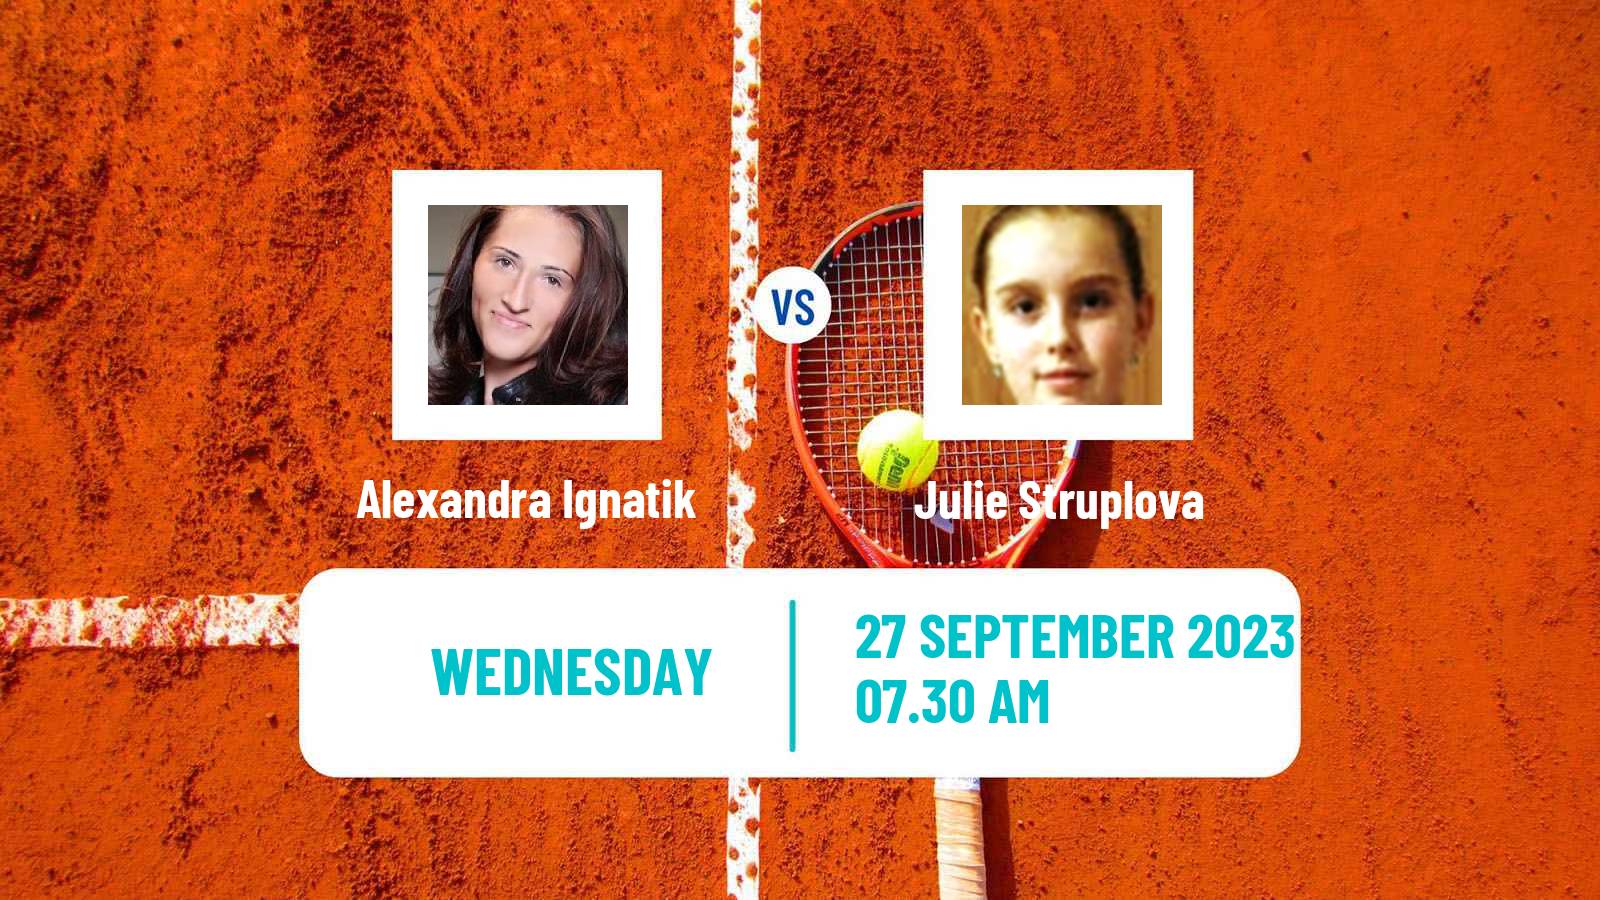 Tennis ITF W40 Kursumlijska Banja Women Alexandra Ignatik - Julie Struplova